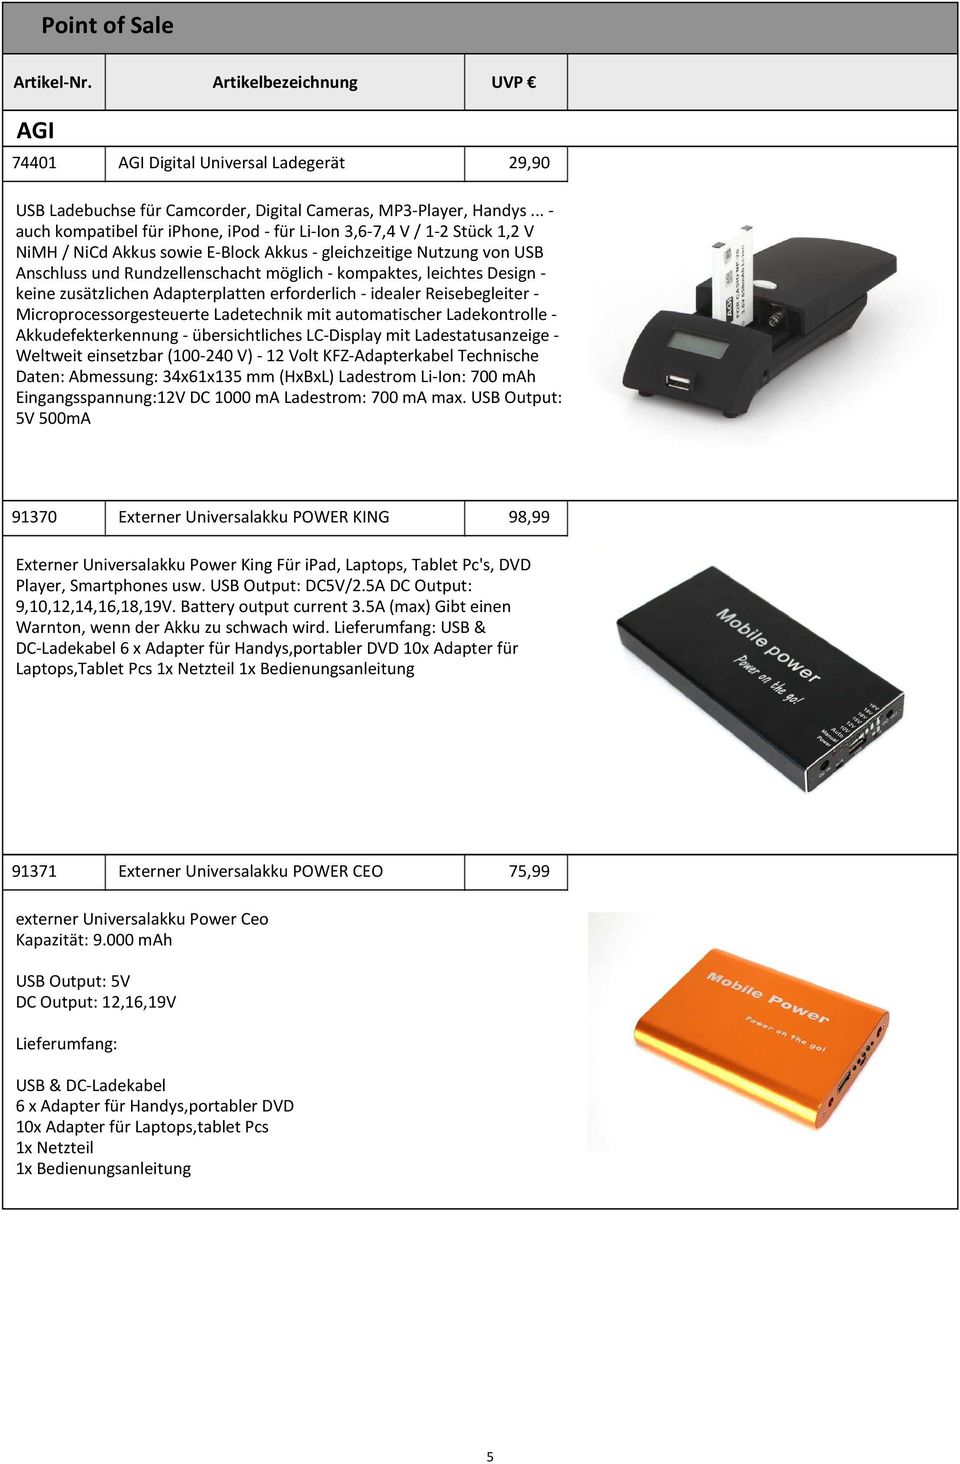 kompaktes, leichtes Design - keine zusätzlichen Adapterplatten erforderlich - idealer Reisebegleiter - Microprocessorgesteuerte Ladetechnik mit automatischer Ladekontrolle - Akkudefekterkennung -